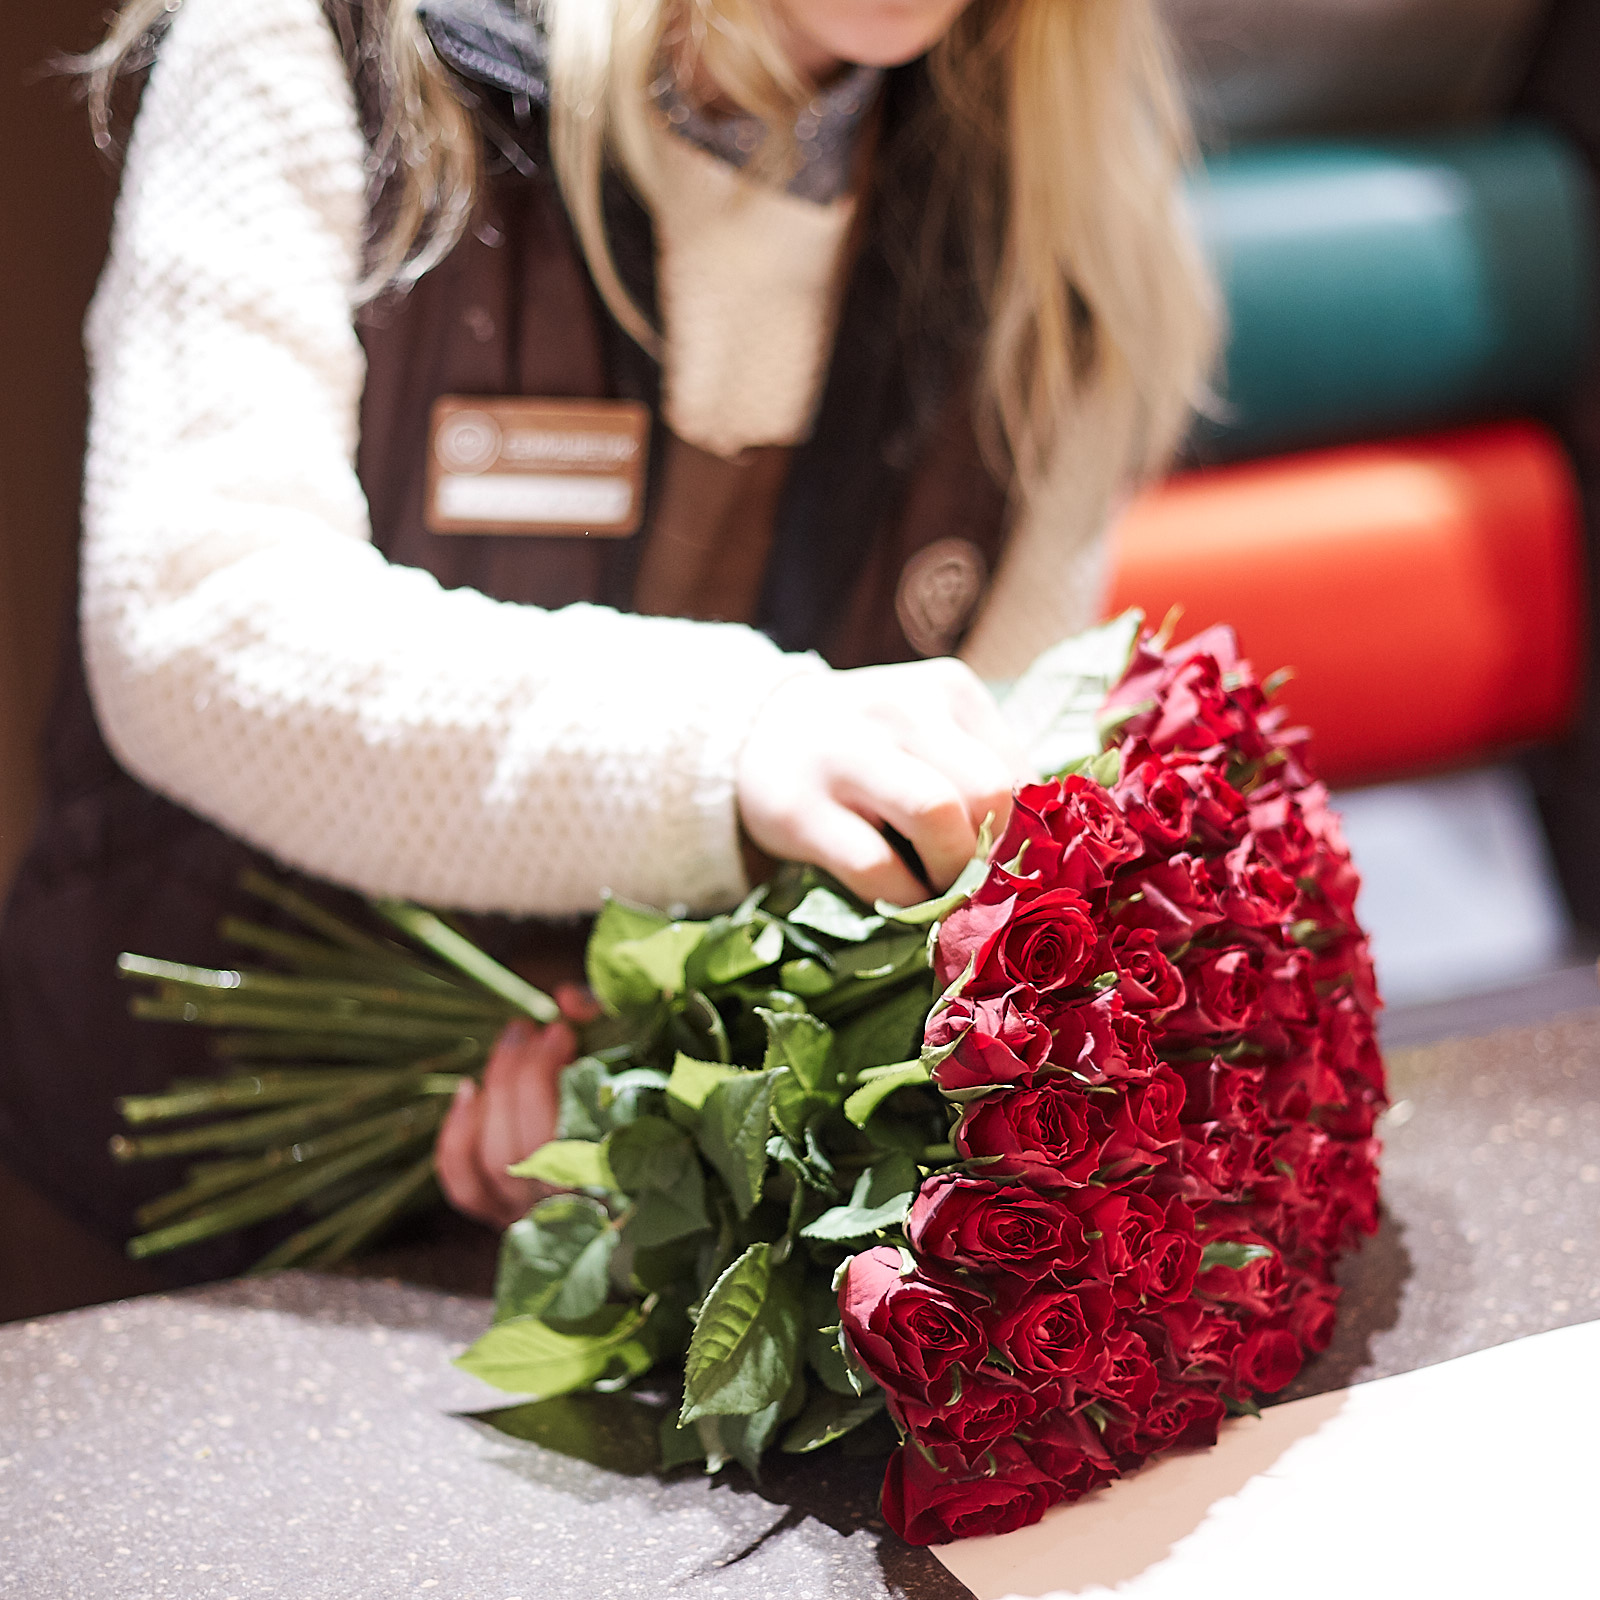 Фото с букетом цветов дома в руках позы